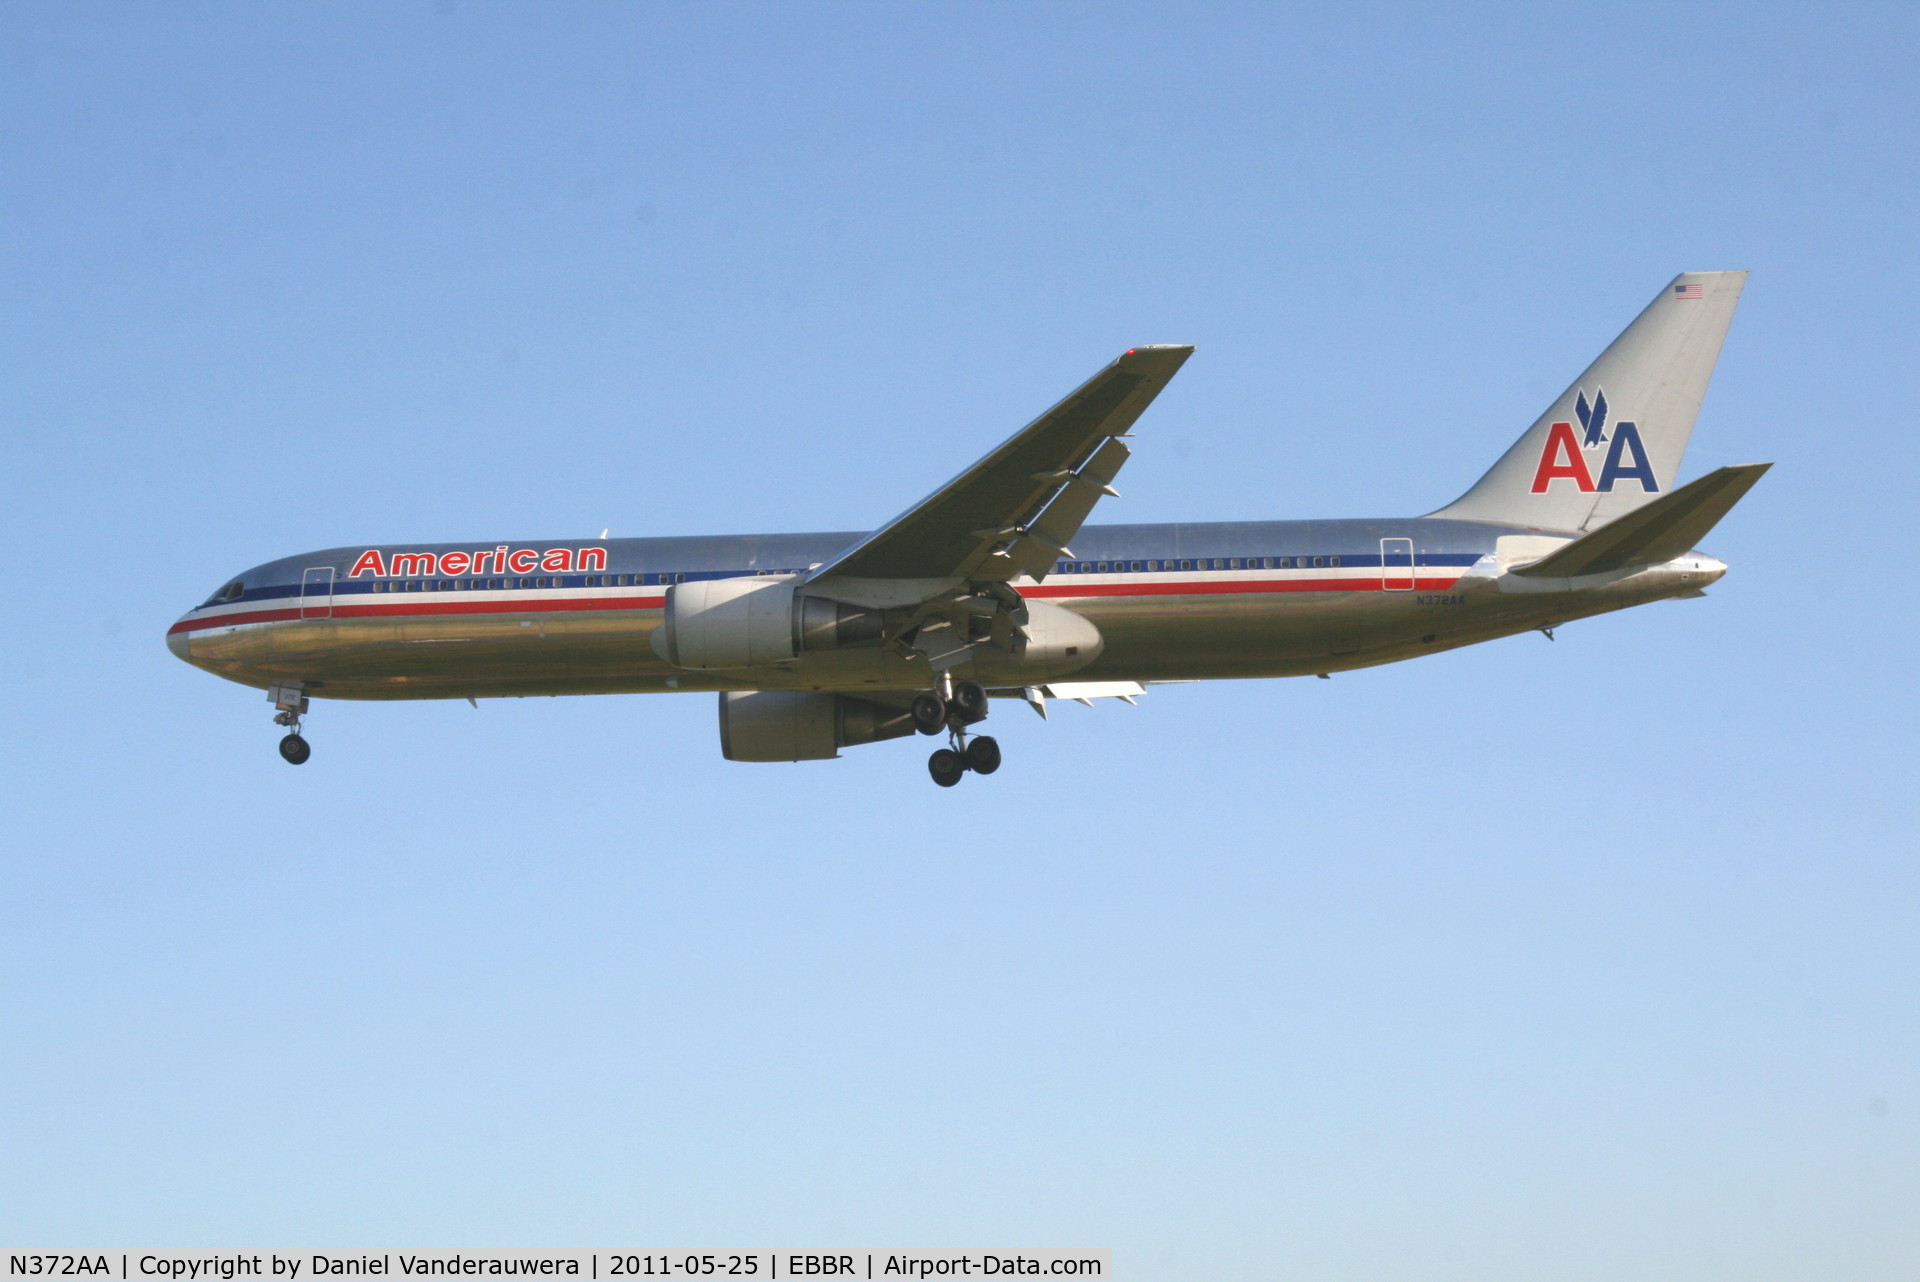 N372AA, 1992 Boeing 767-323 C/N 25199, Arrival of flight AA088 to RWY 25L